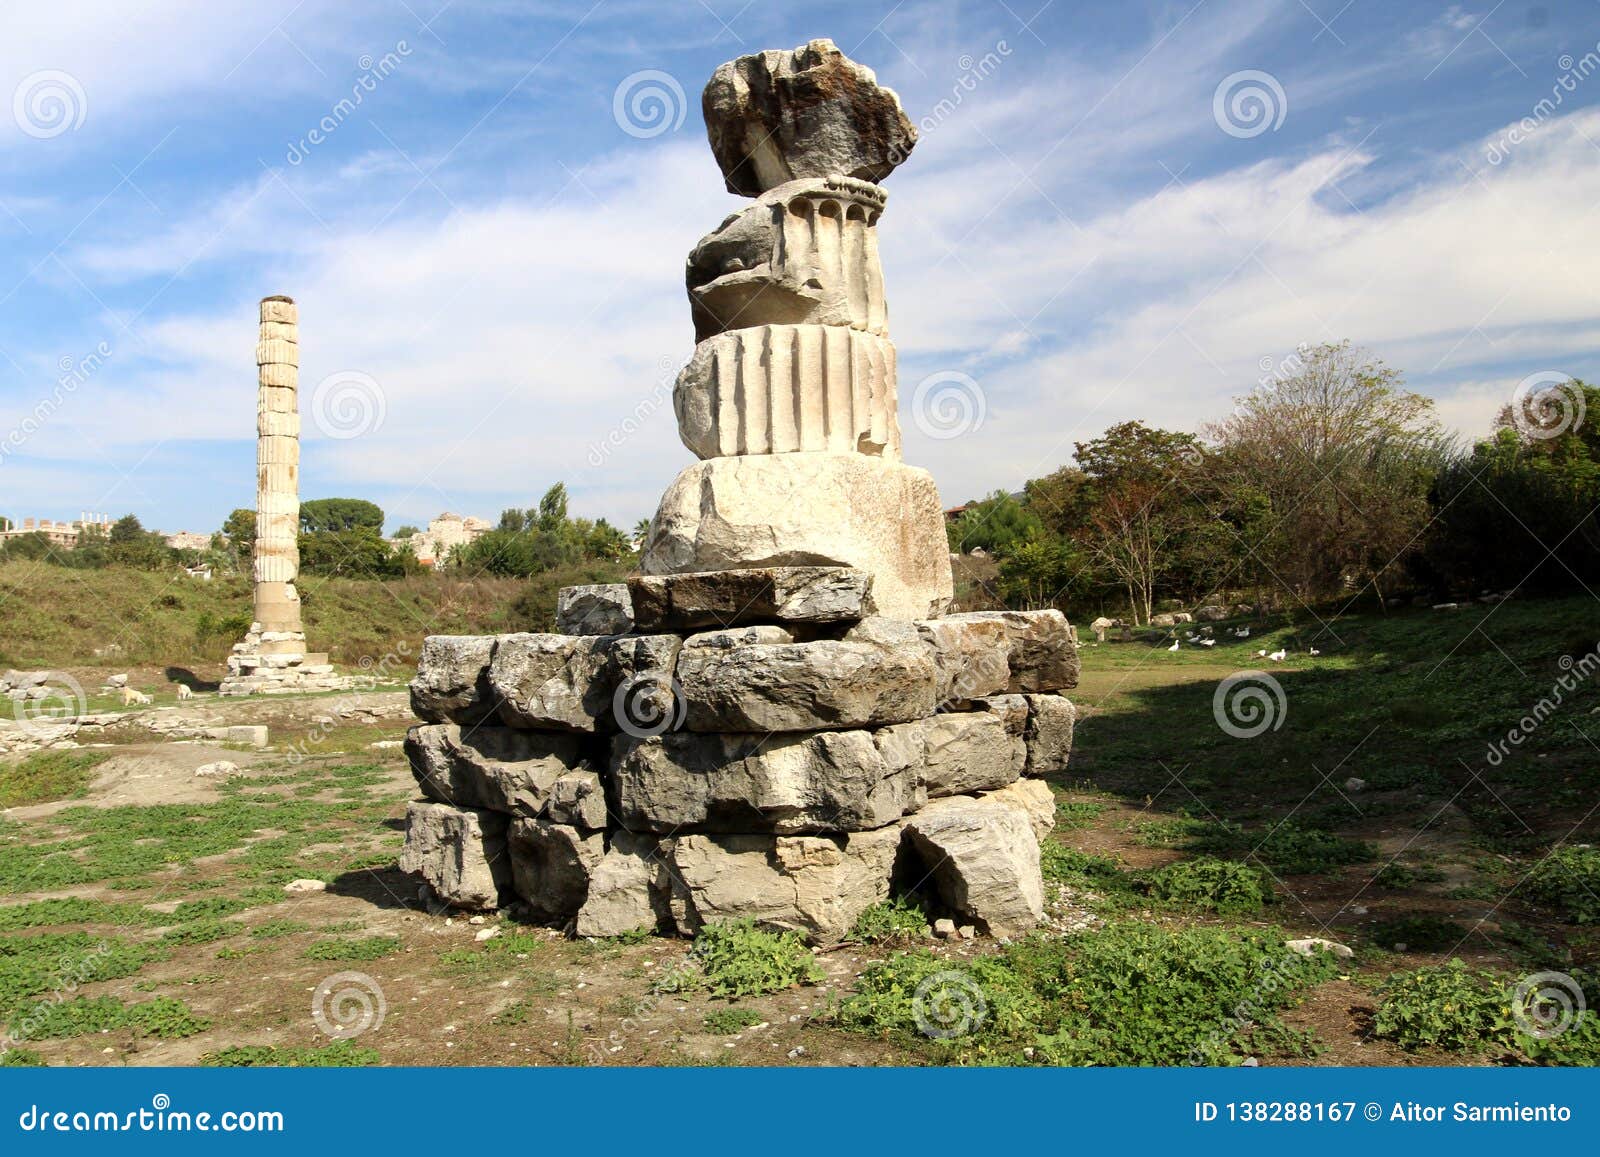 temple of artemisa turkey